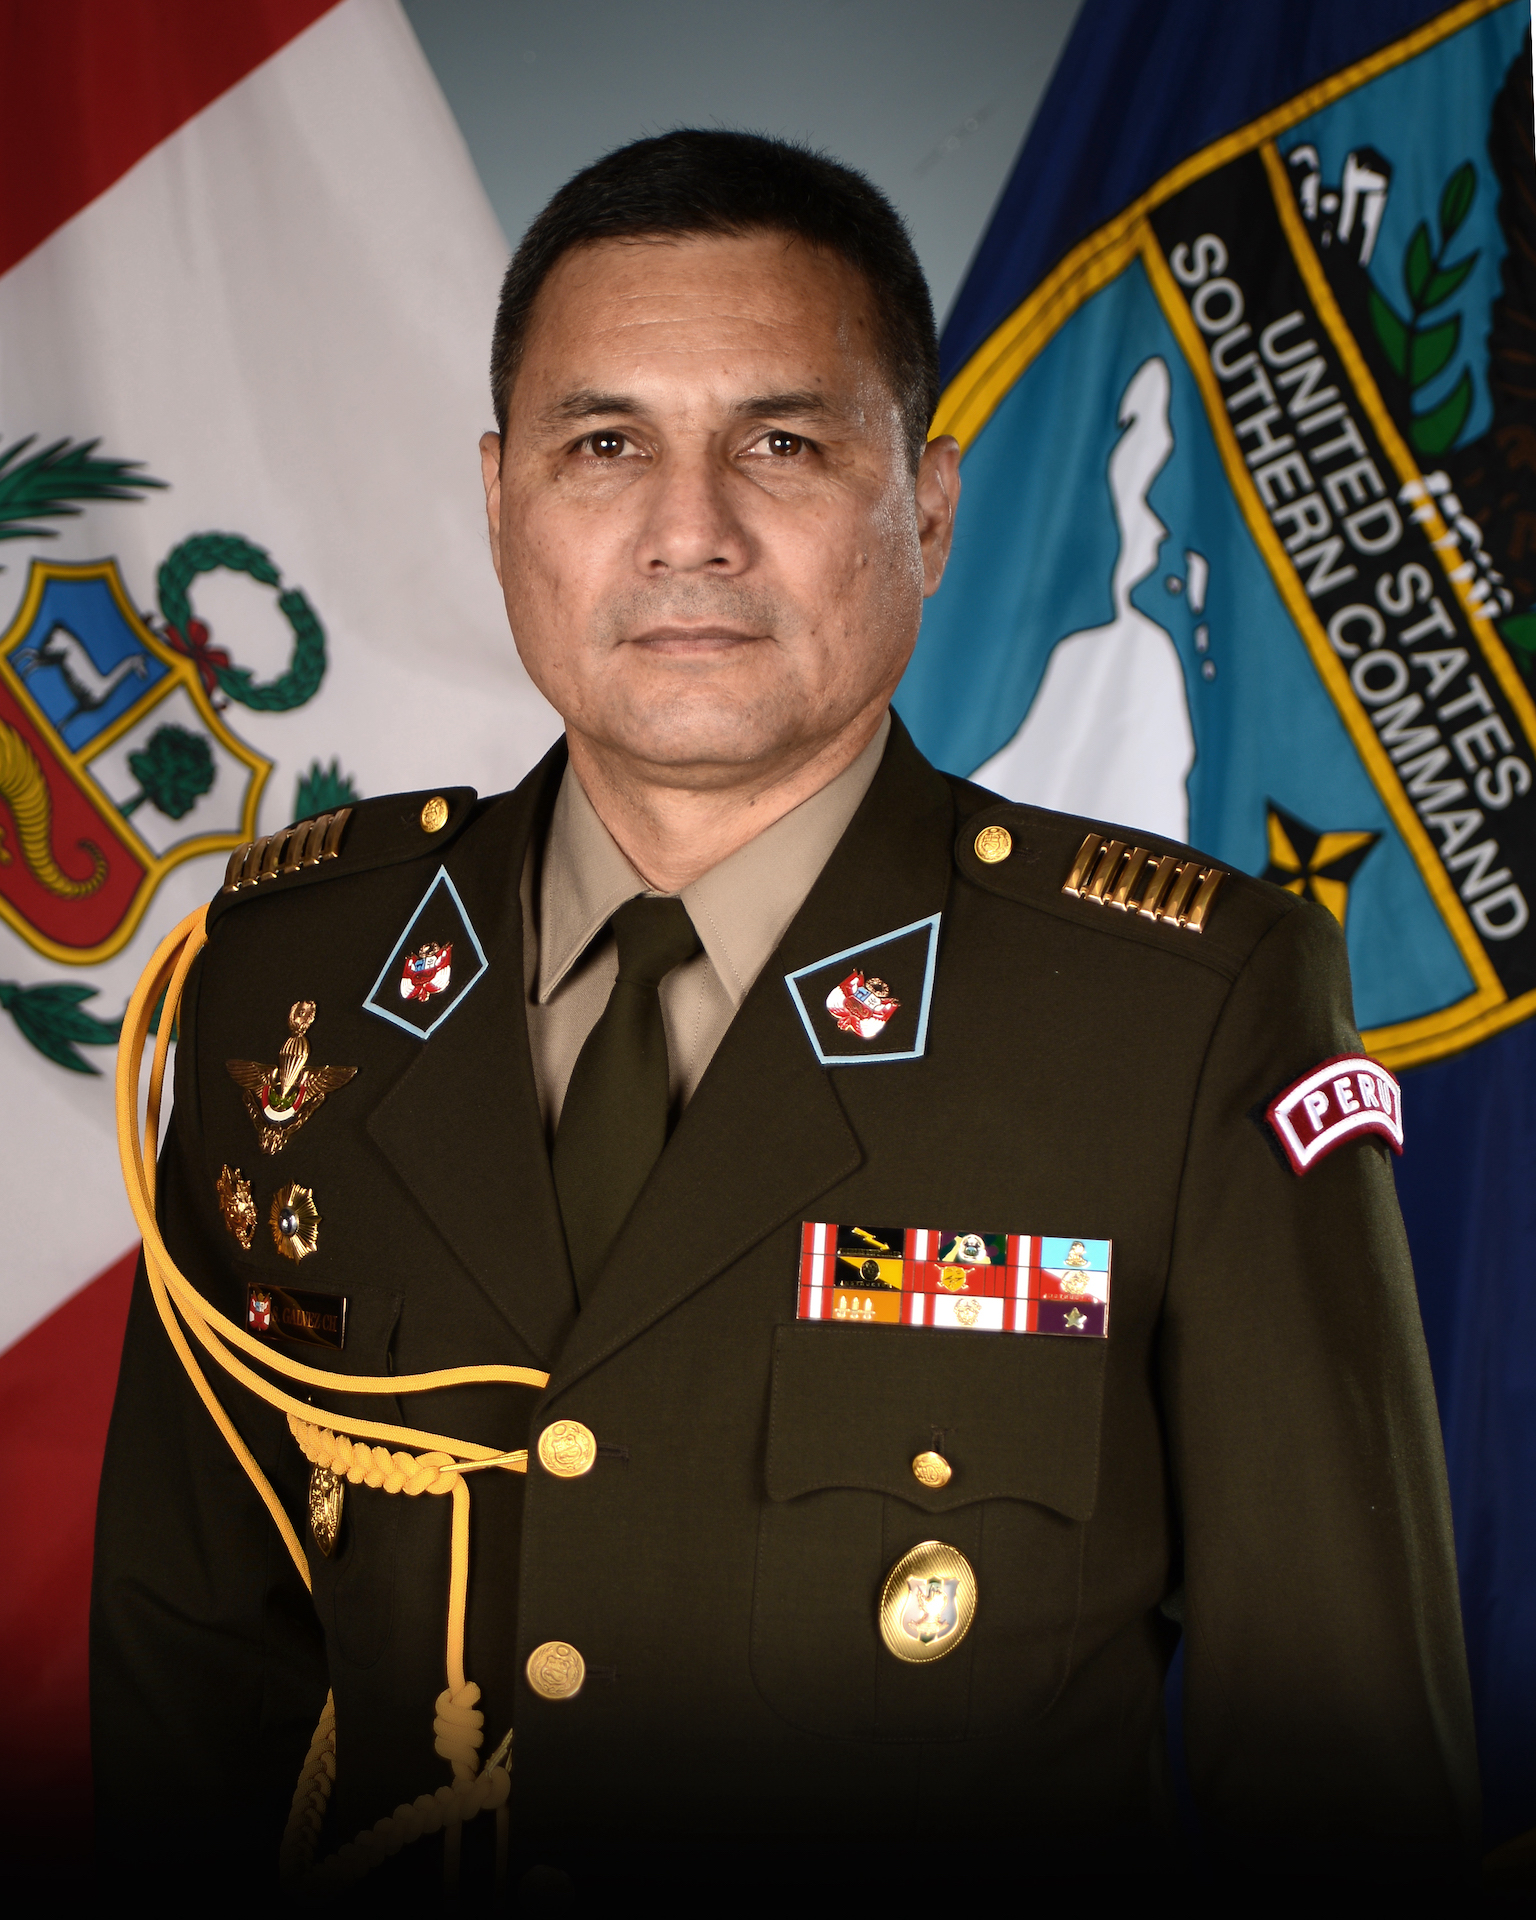 Consejero militar del Perú: Unidos somos más fuertes para combatir amenazas comunes